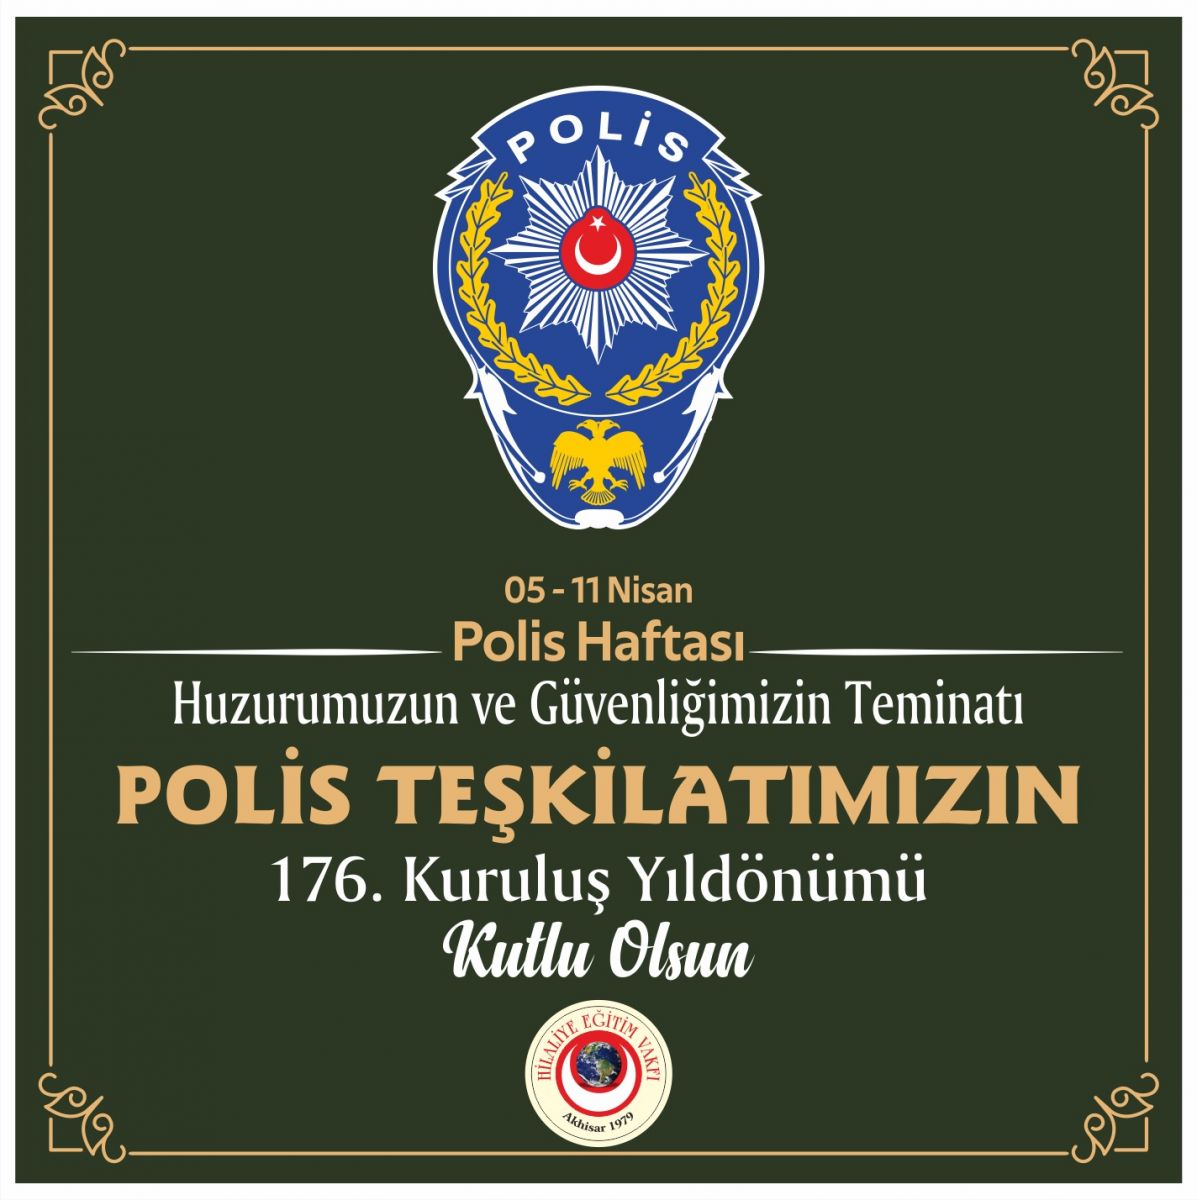 POLİS TEŞKİLATIMIZIN 176.KURULUŞ YIL DÖNÜMÜ KUTLU OLSUN